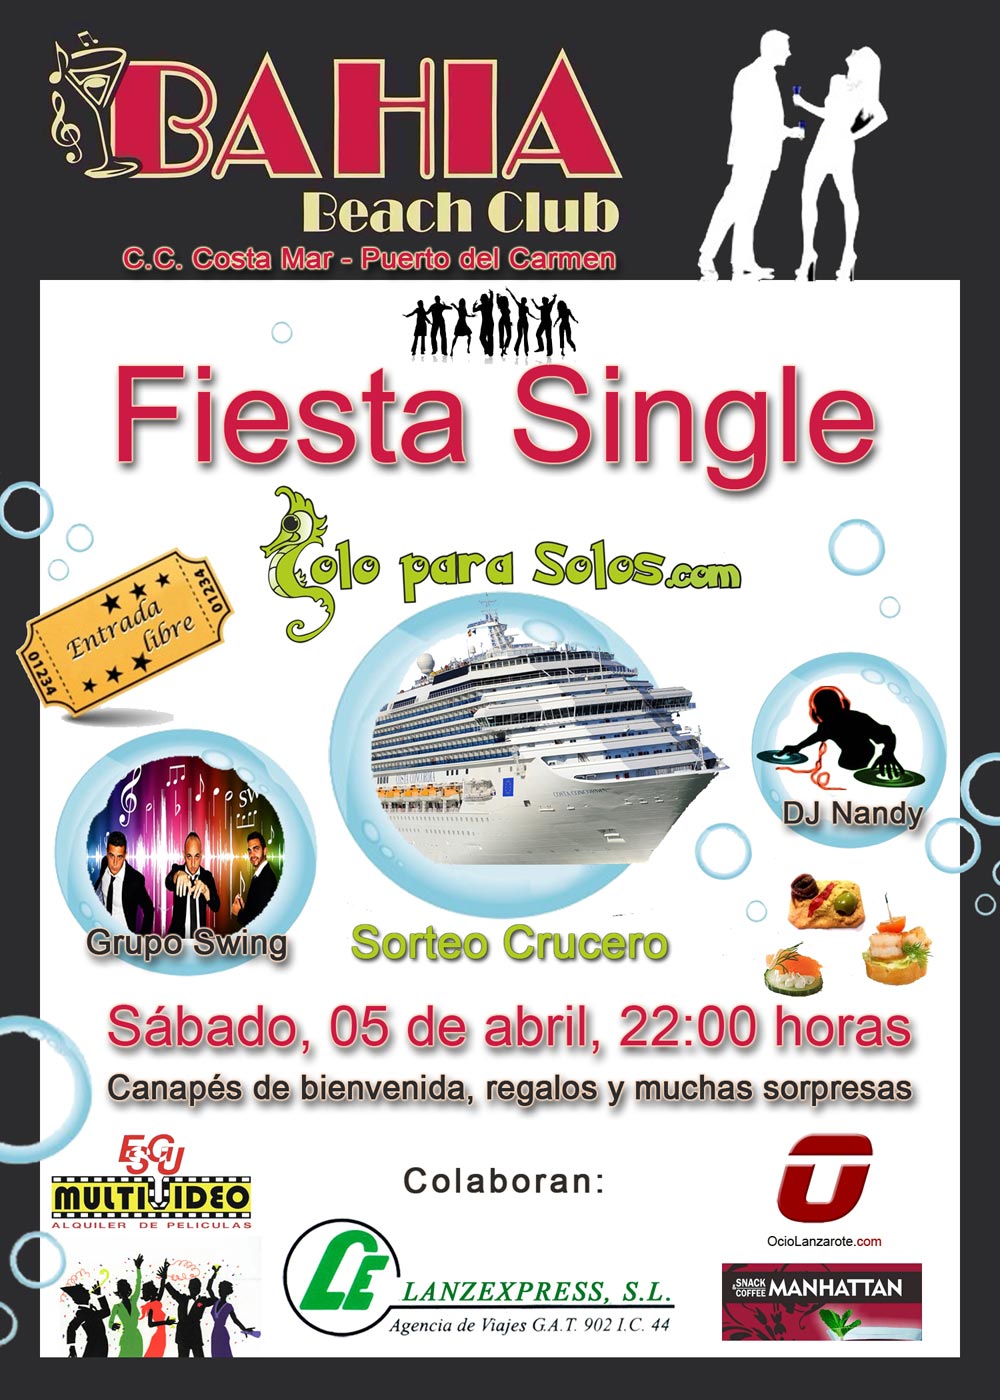 fiesta-single-en-bahia-beach-club-puerto-del-carmen-snabado-05-de-abril